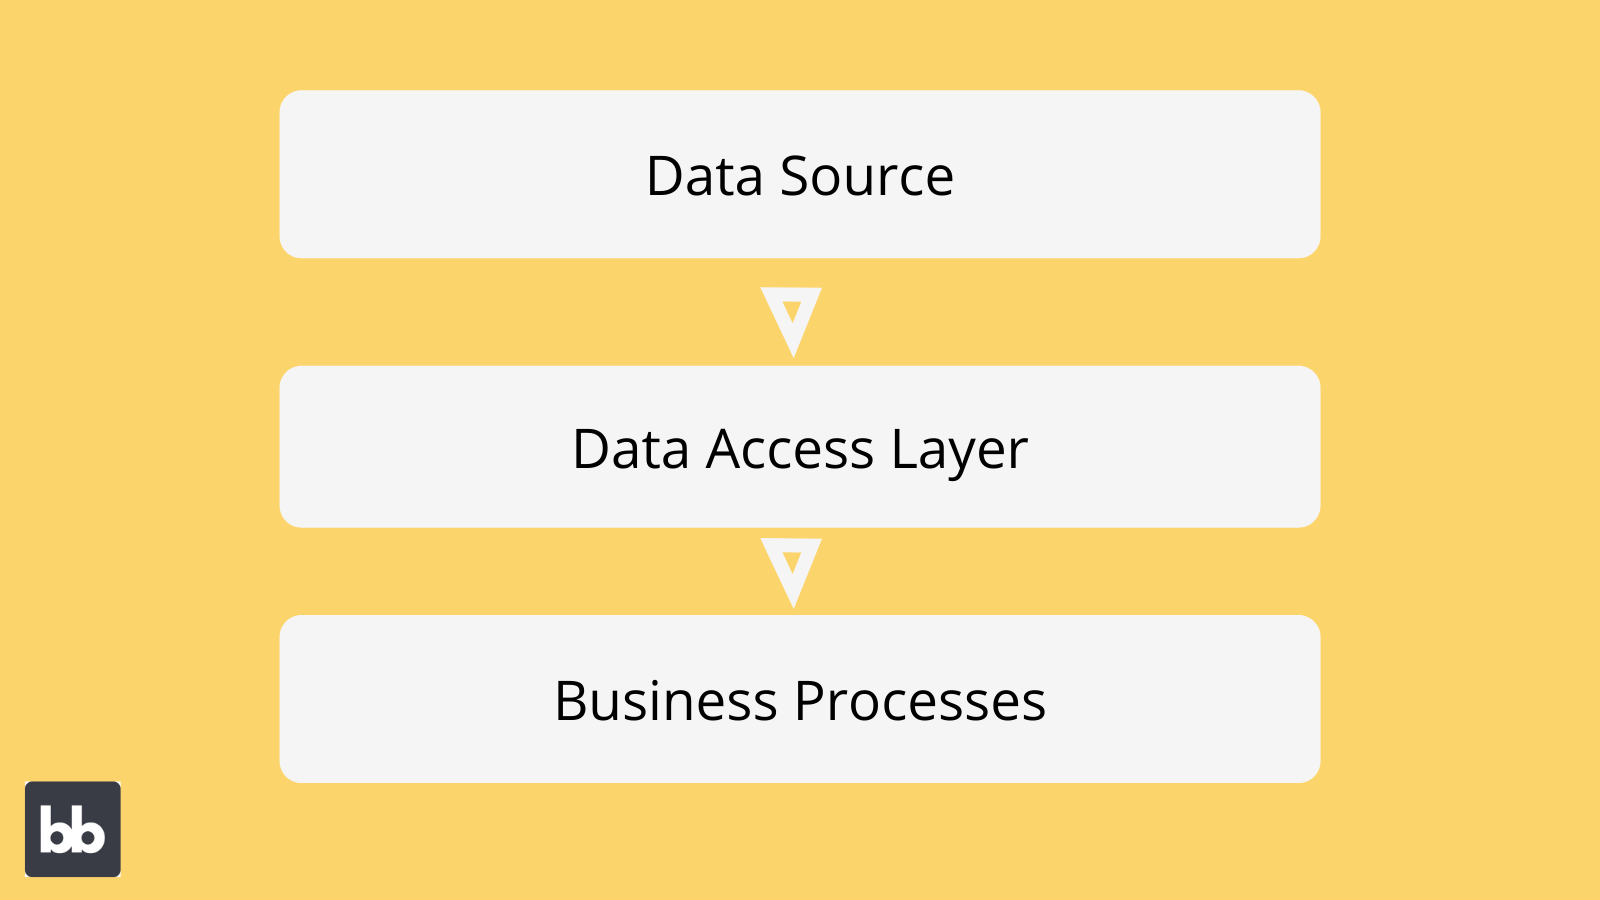 Data Access Layer